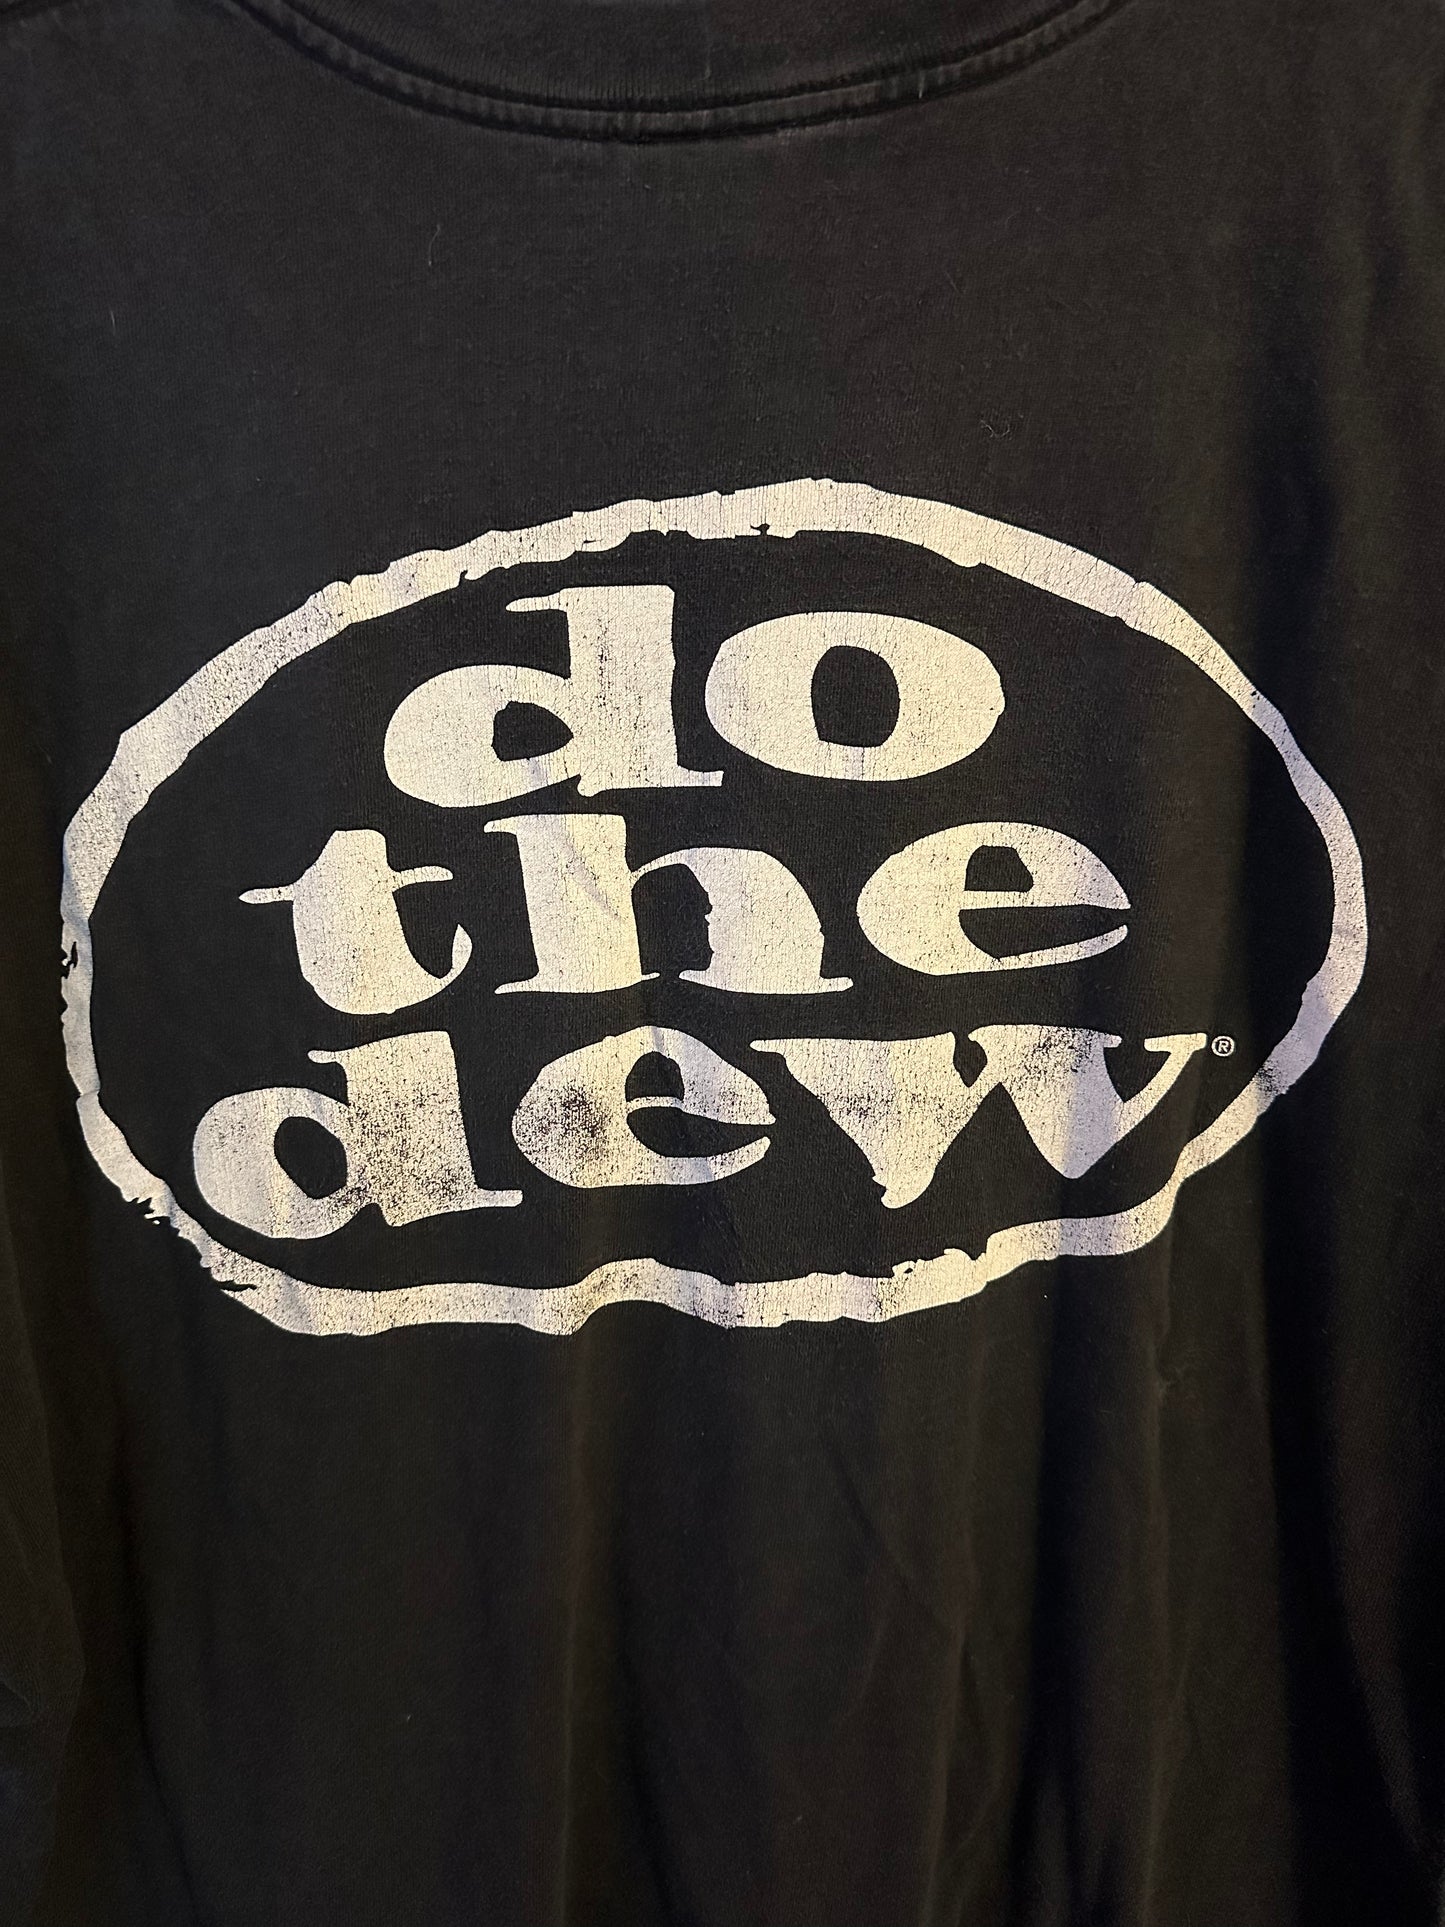 Mountain Dew Camiseta